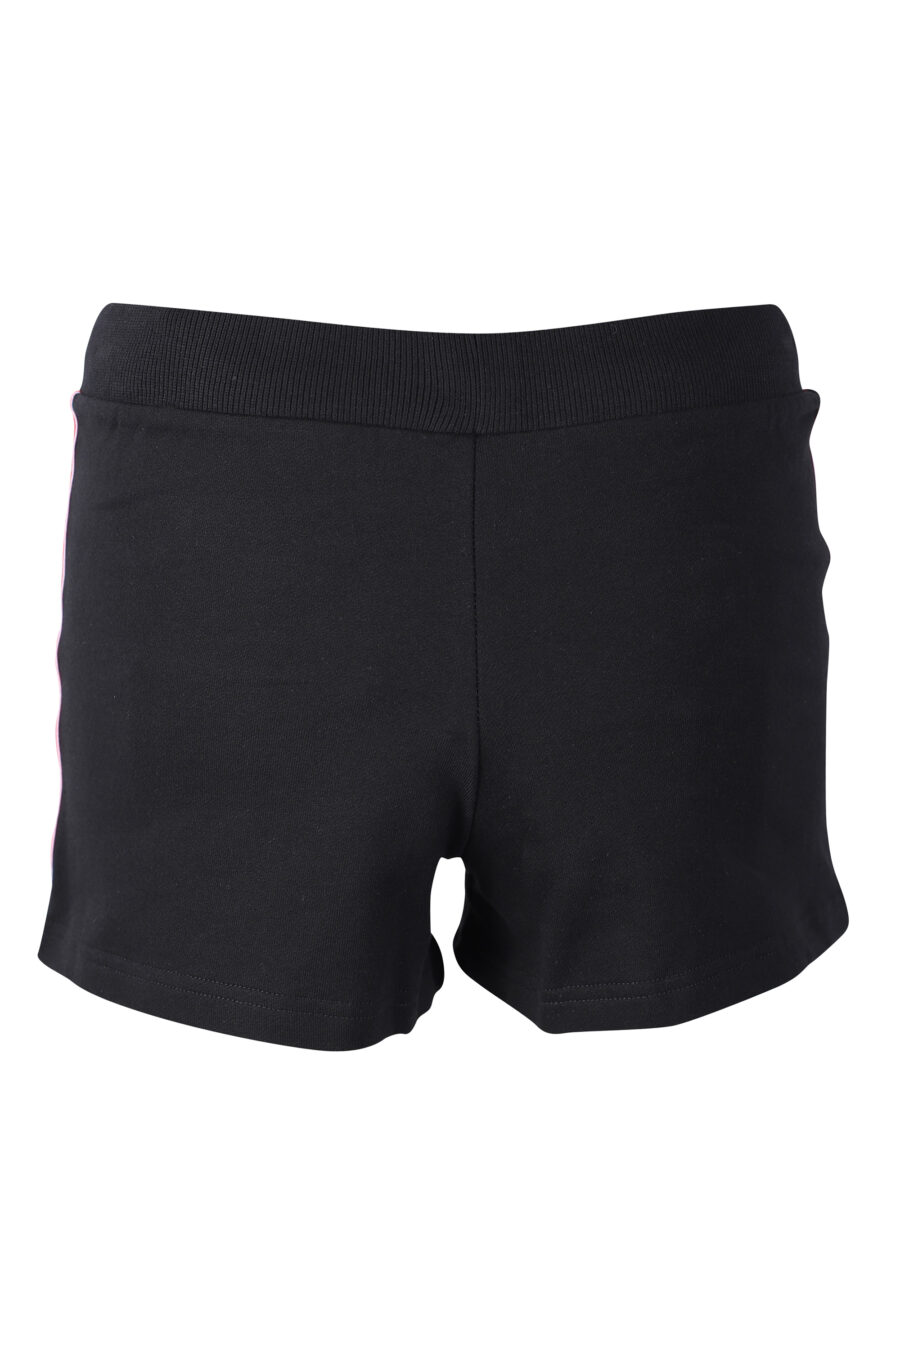 Pantalón de chándal negro corto con logo en cinta lateral - IMG 2294